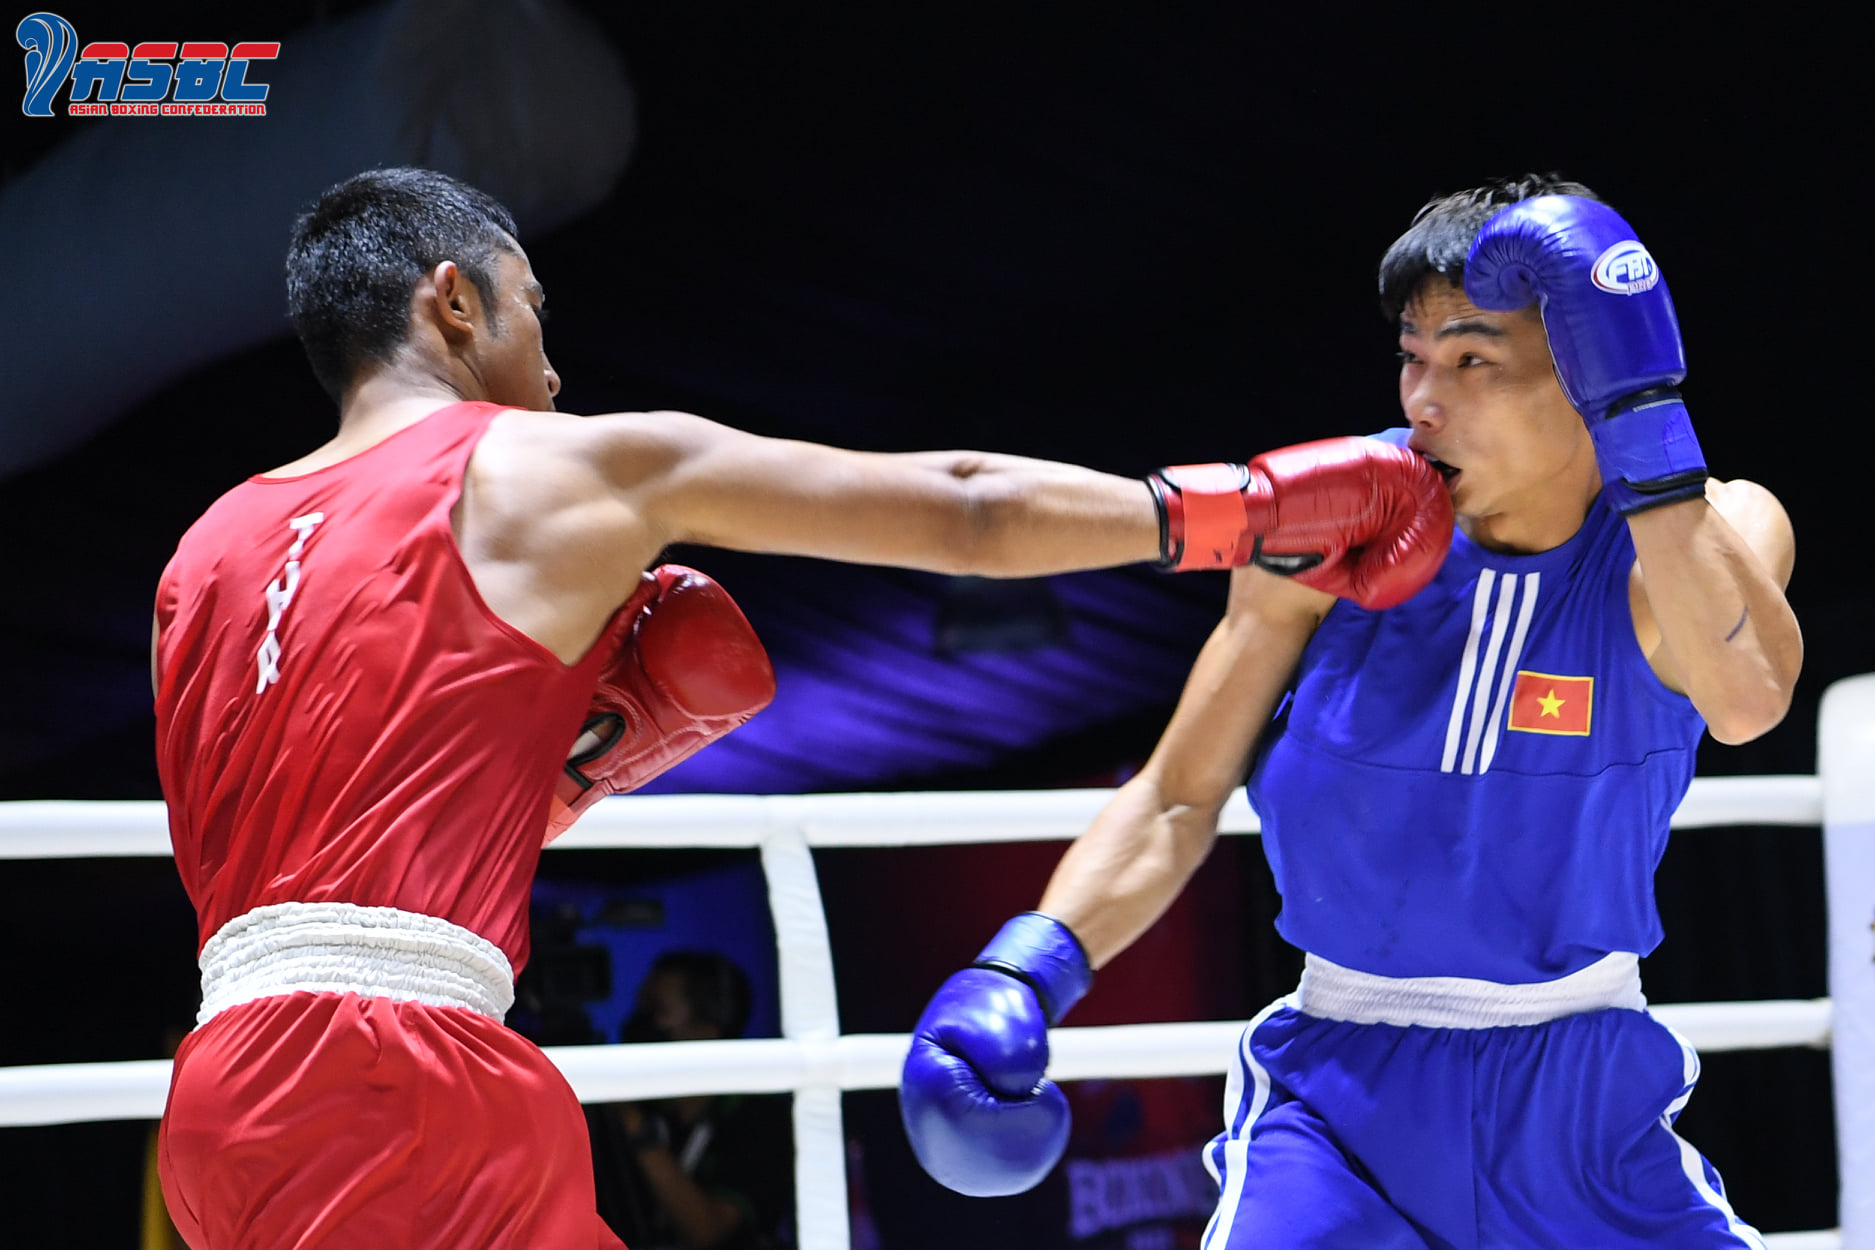 Thành Đạt, Đức Thọ nhận kết quả trái ngược ở ngày ra quân giải Boxing Thái Lan Mở rộng - Ảnh 2